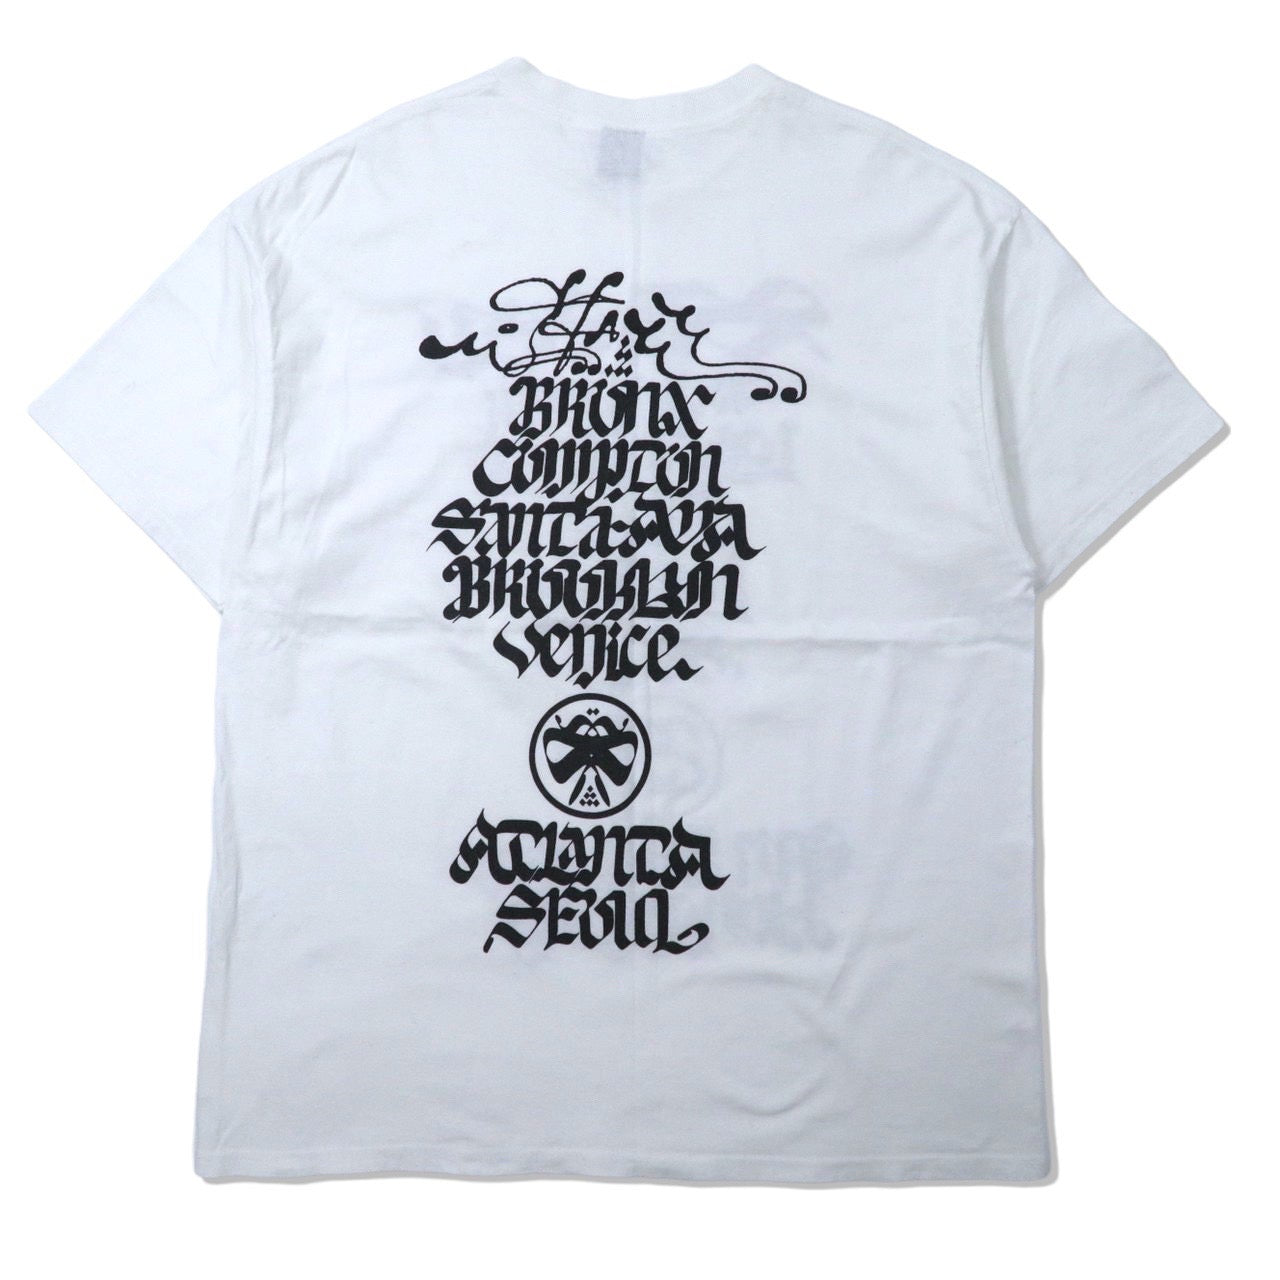 Stussy ビッグサイズロゴTシャツ XL ホワイト WORLD TOUR 2006 ワールドツアー GRAFFITI 41 ROSTARR メキシコ製